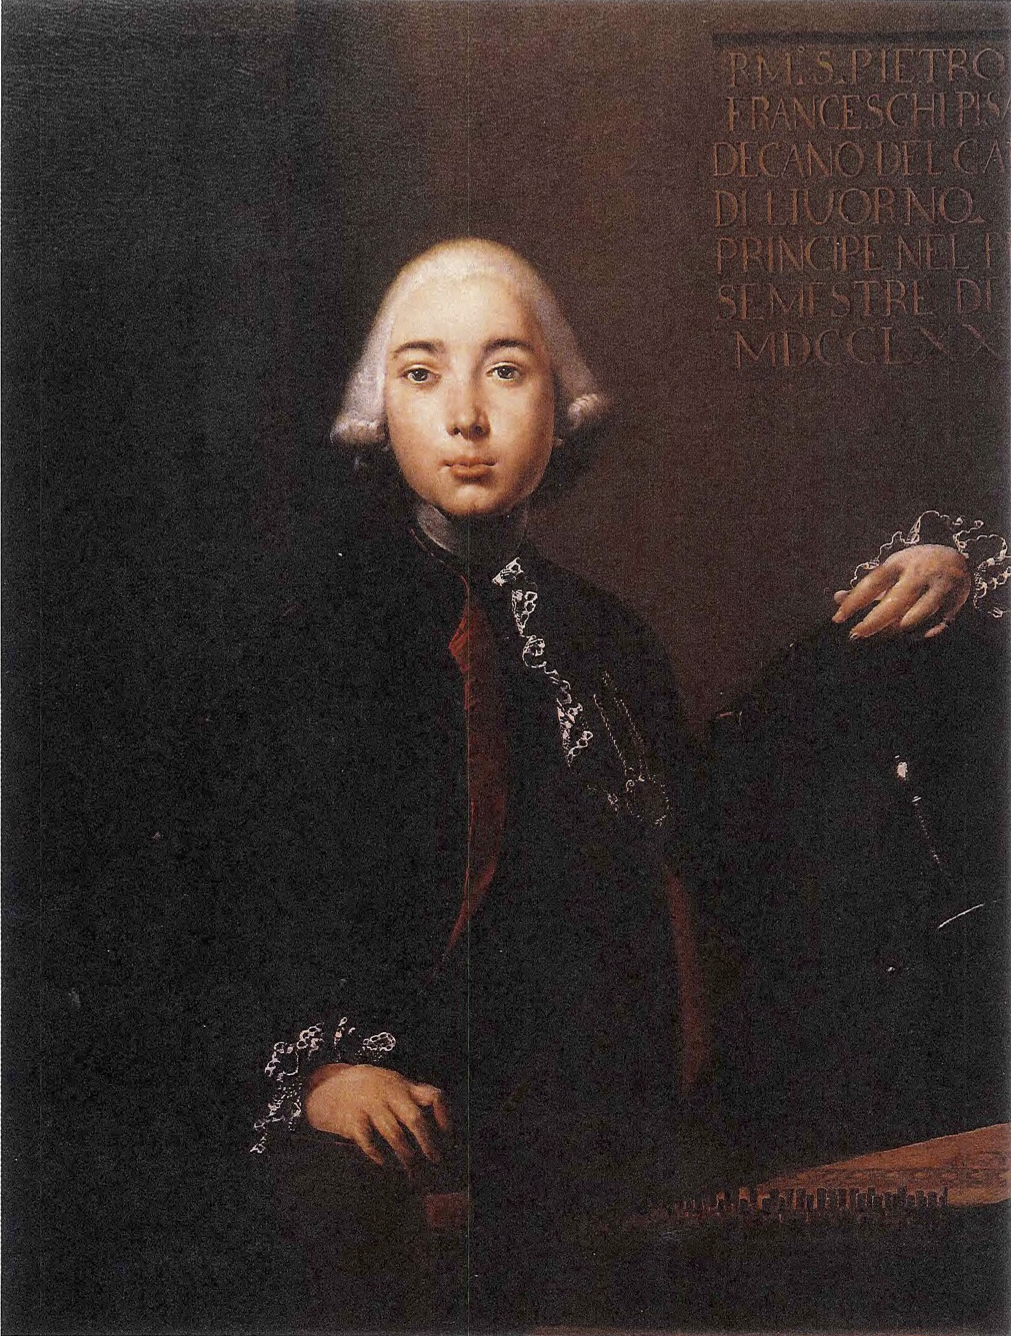 Pietro Franceschi